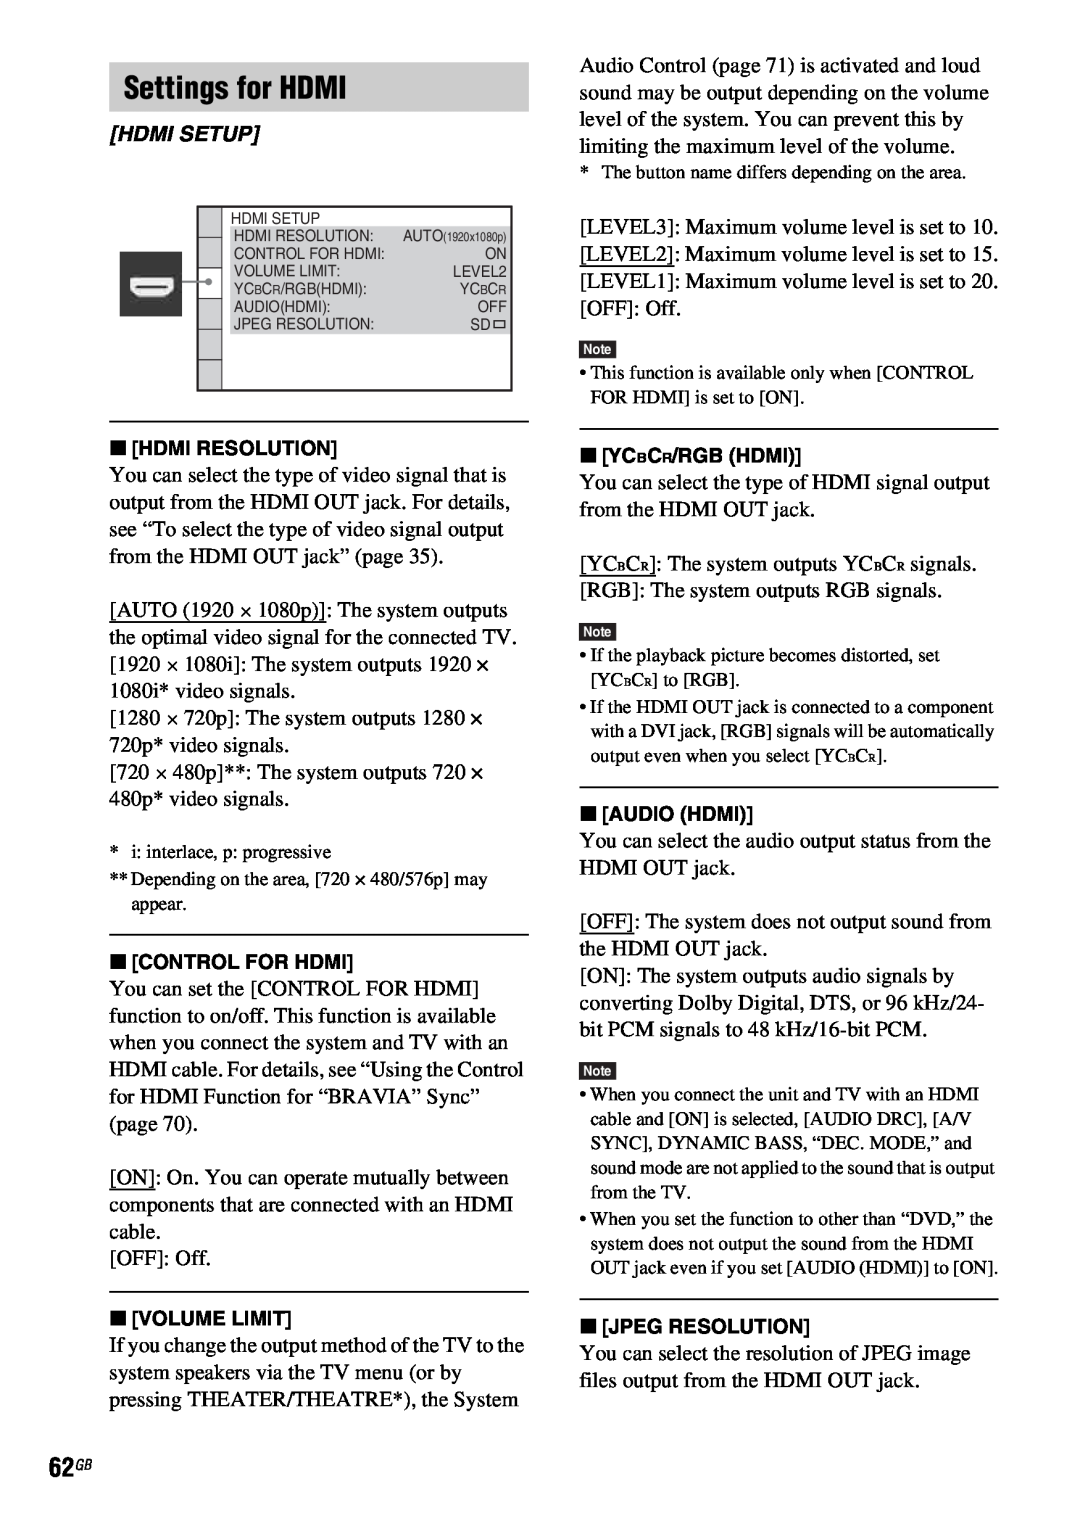 Sony DAV-HDX685 manual Settings for HDMI, Hdmi Setup, xHDMI RESOLUTION, xCONTROL FOR HDMI, xVOLUME LIMIT, xYCBCR/RGB HDMI 